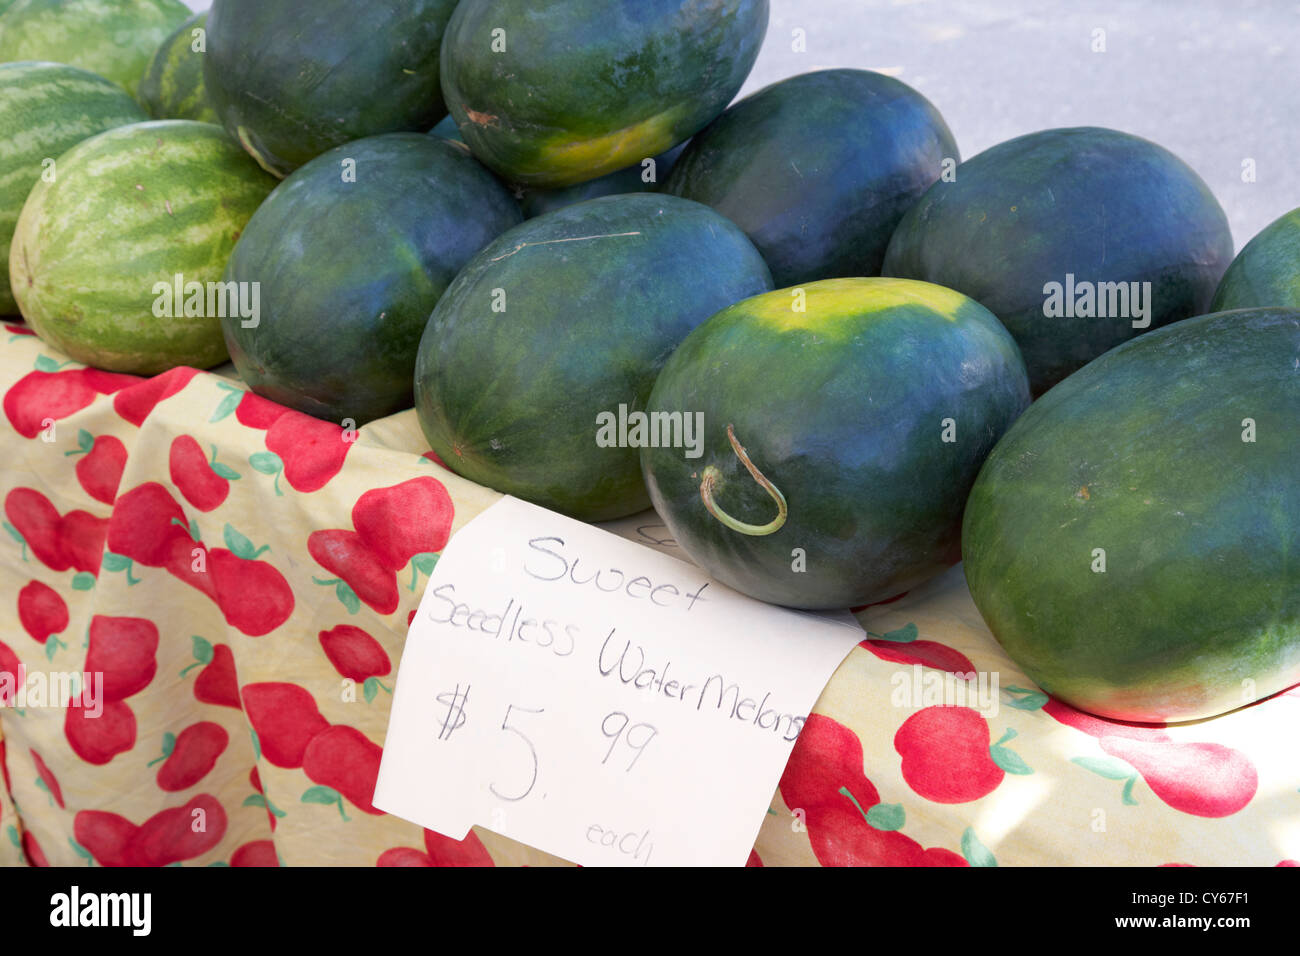 süße kernlose Wassermelonen in einem örtlichen Bauernmarkt Feier Florida Usa Stockfoto